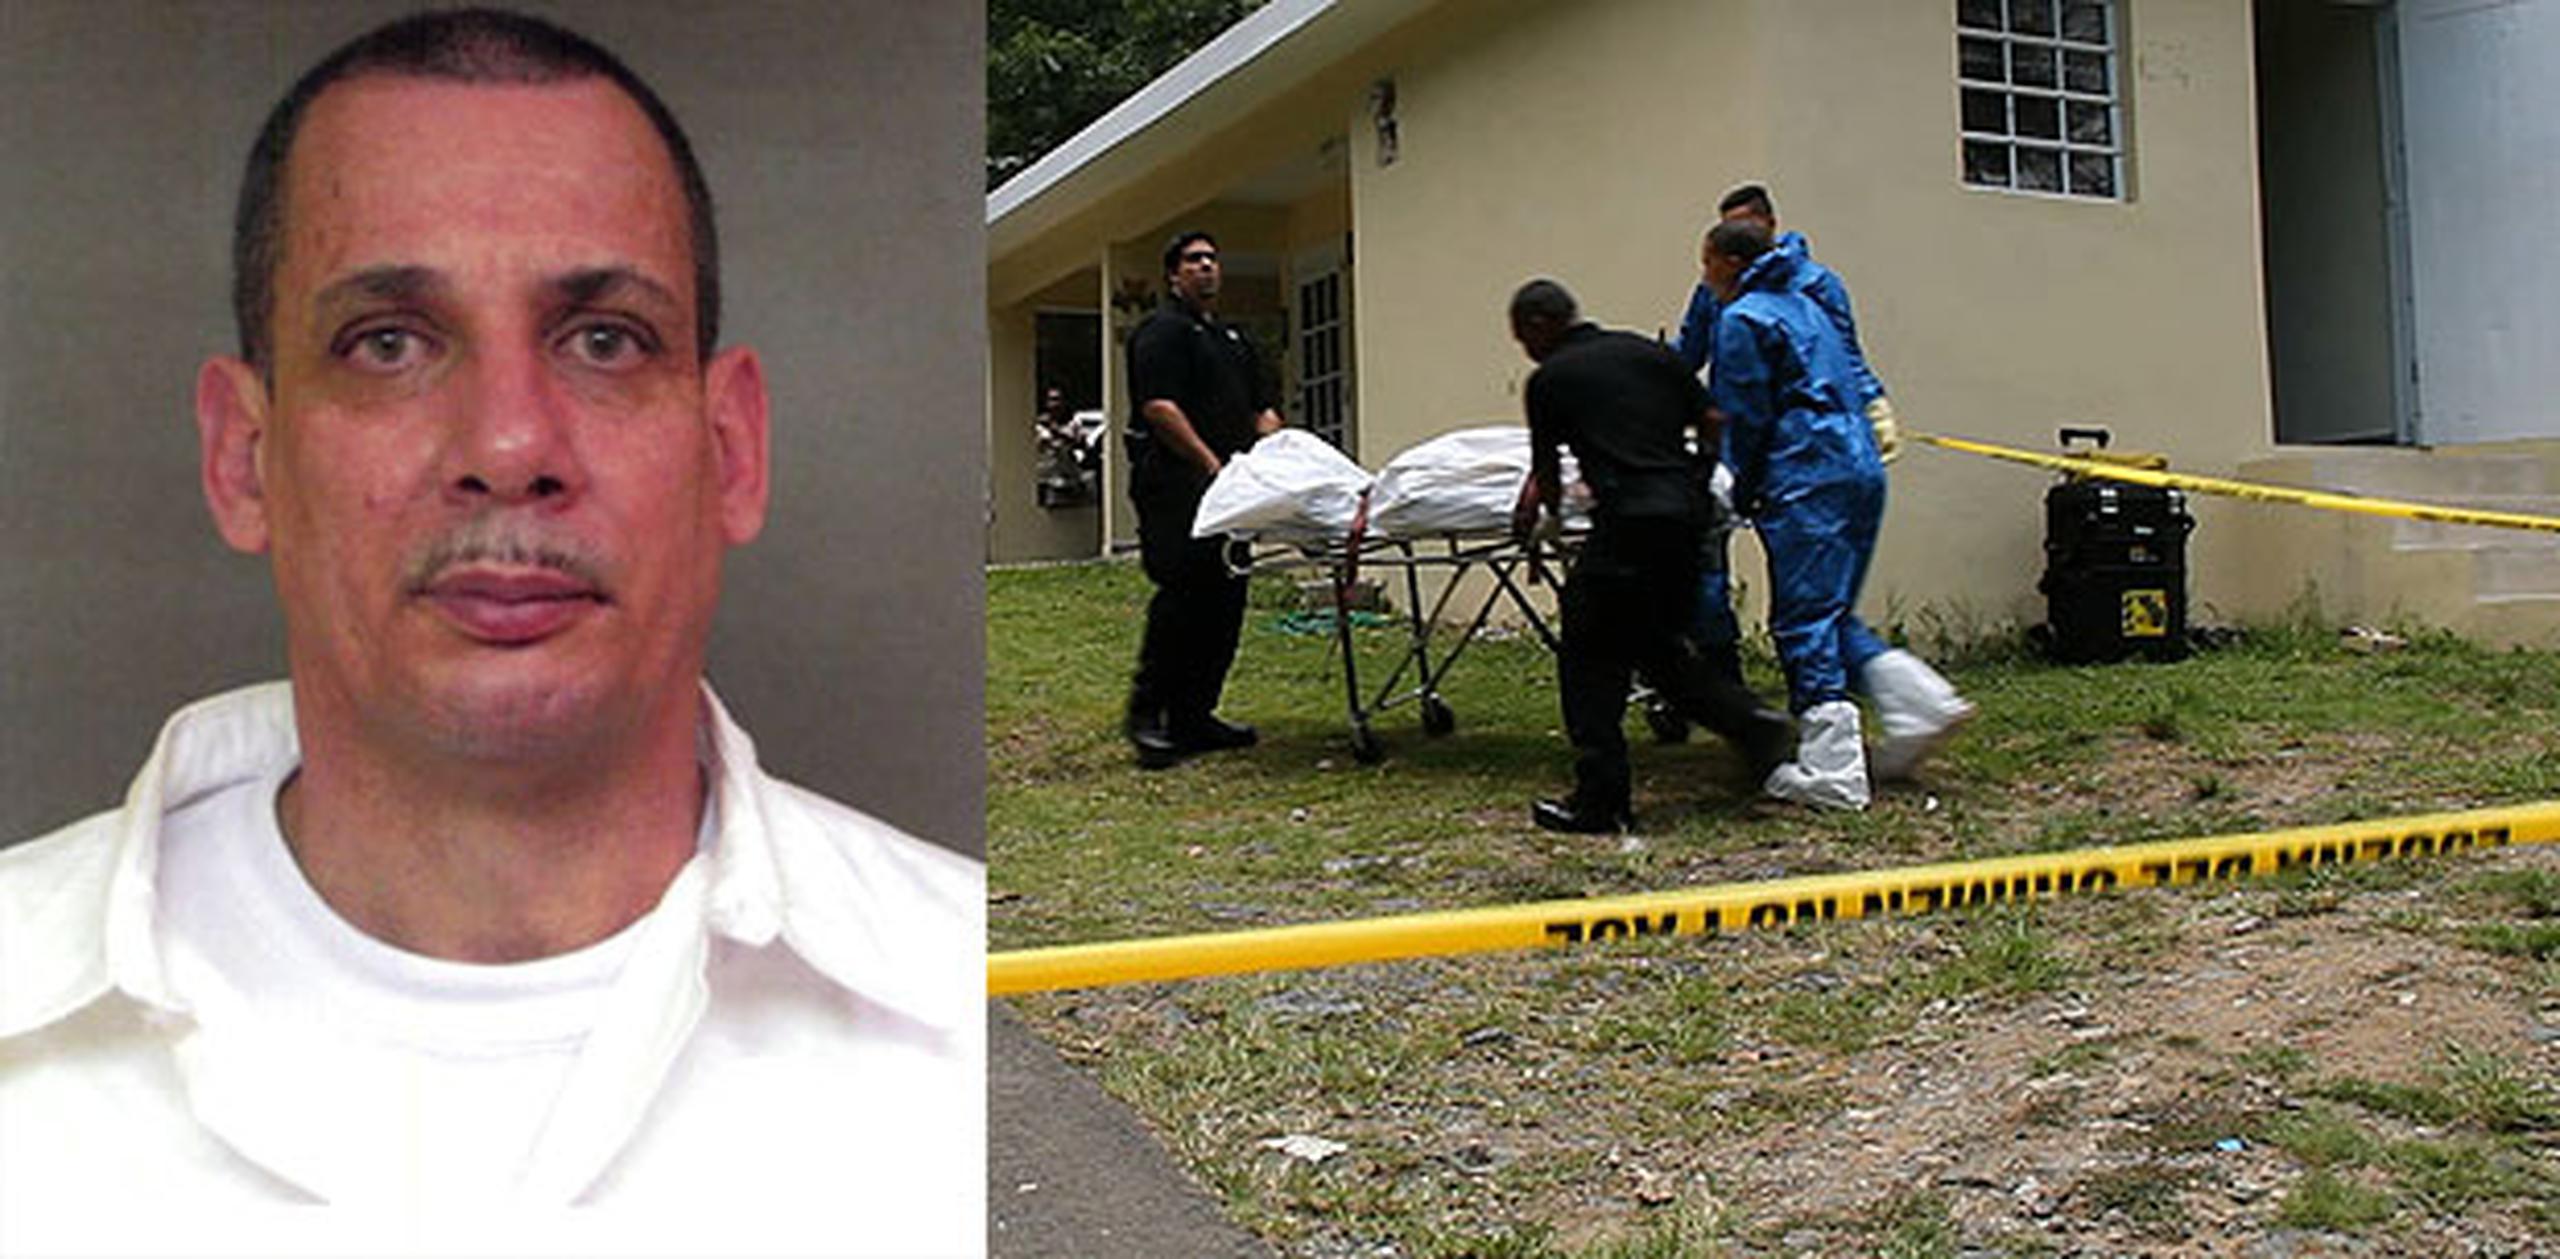 Los alguaciles federales señalaron que Padilla es considerado "armado y peligroso". (alex.figueroa@gfrmedia.com)
